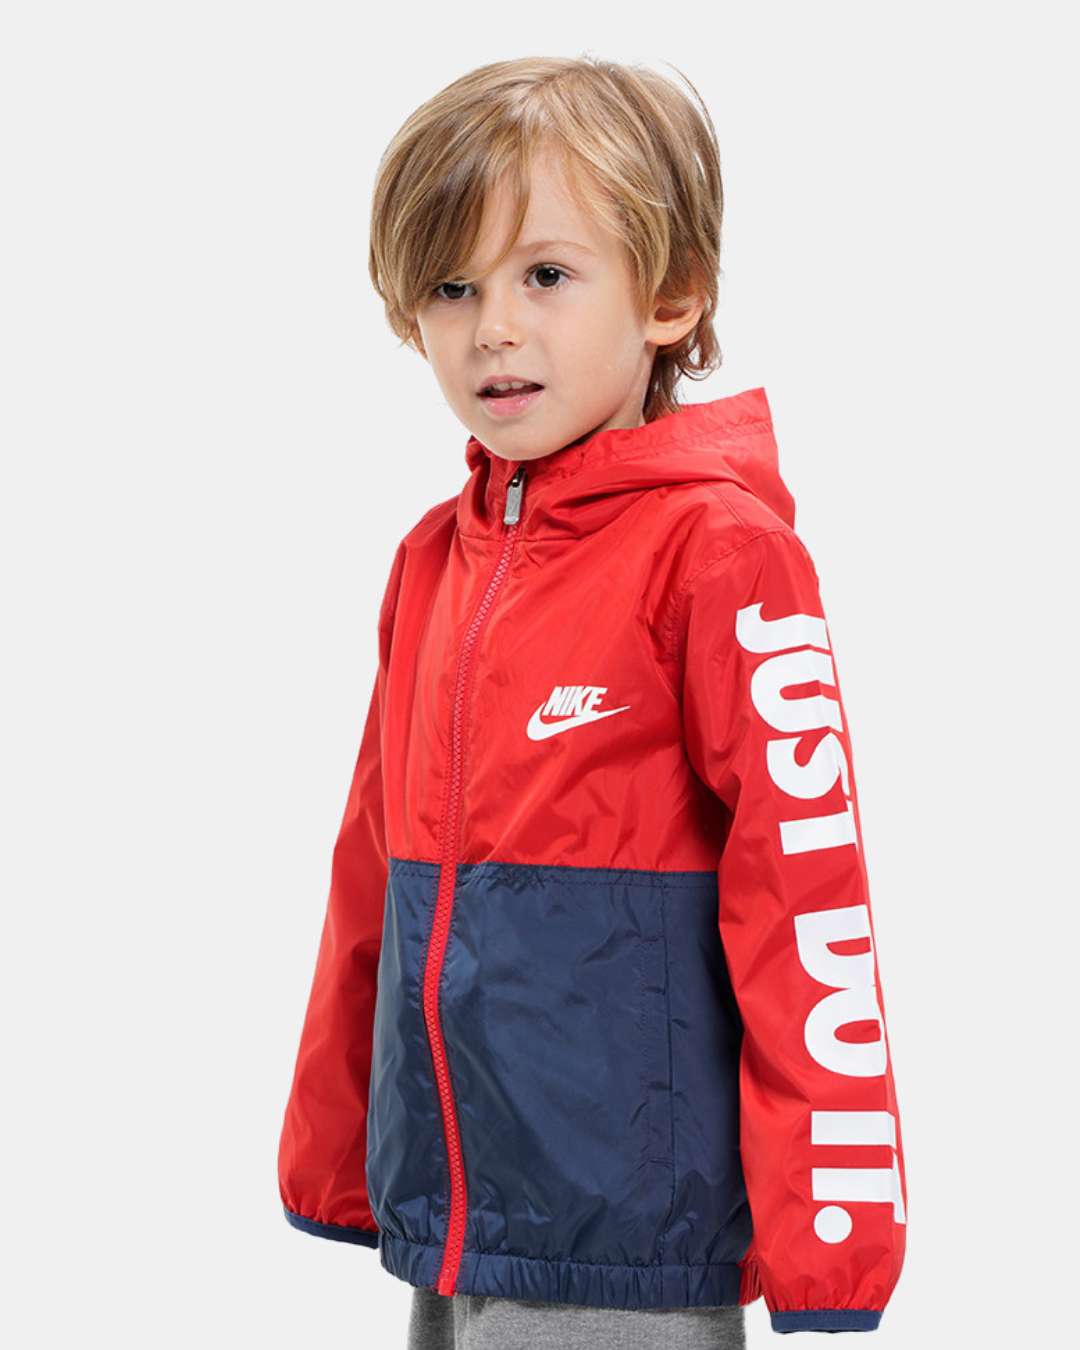 Nike Kids Jacket - Red